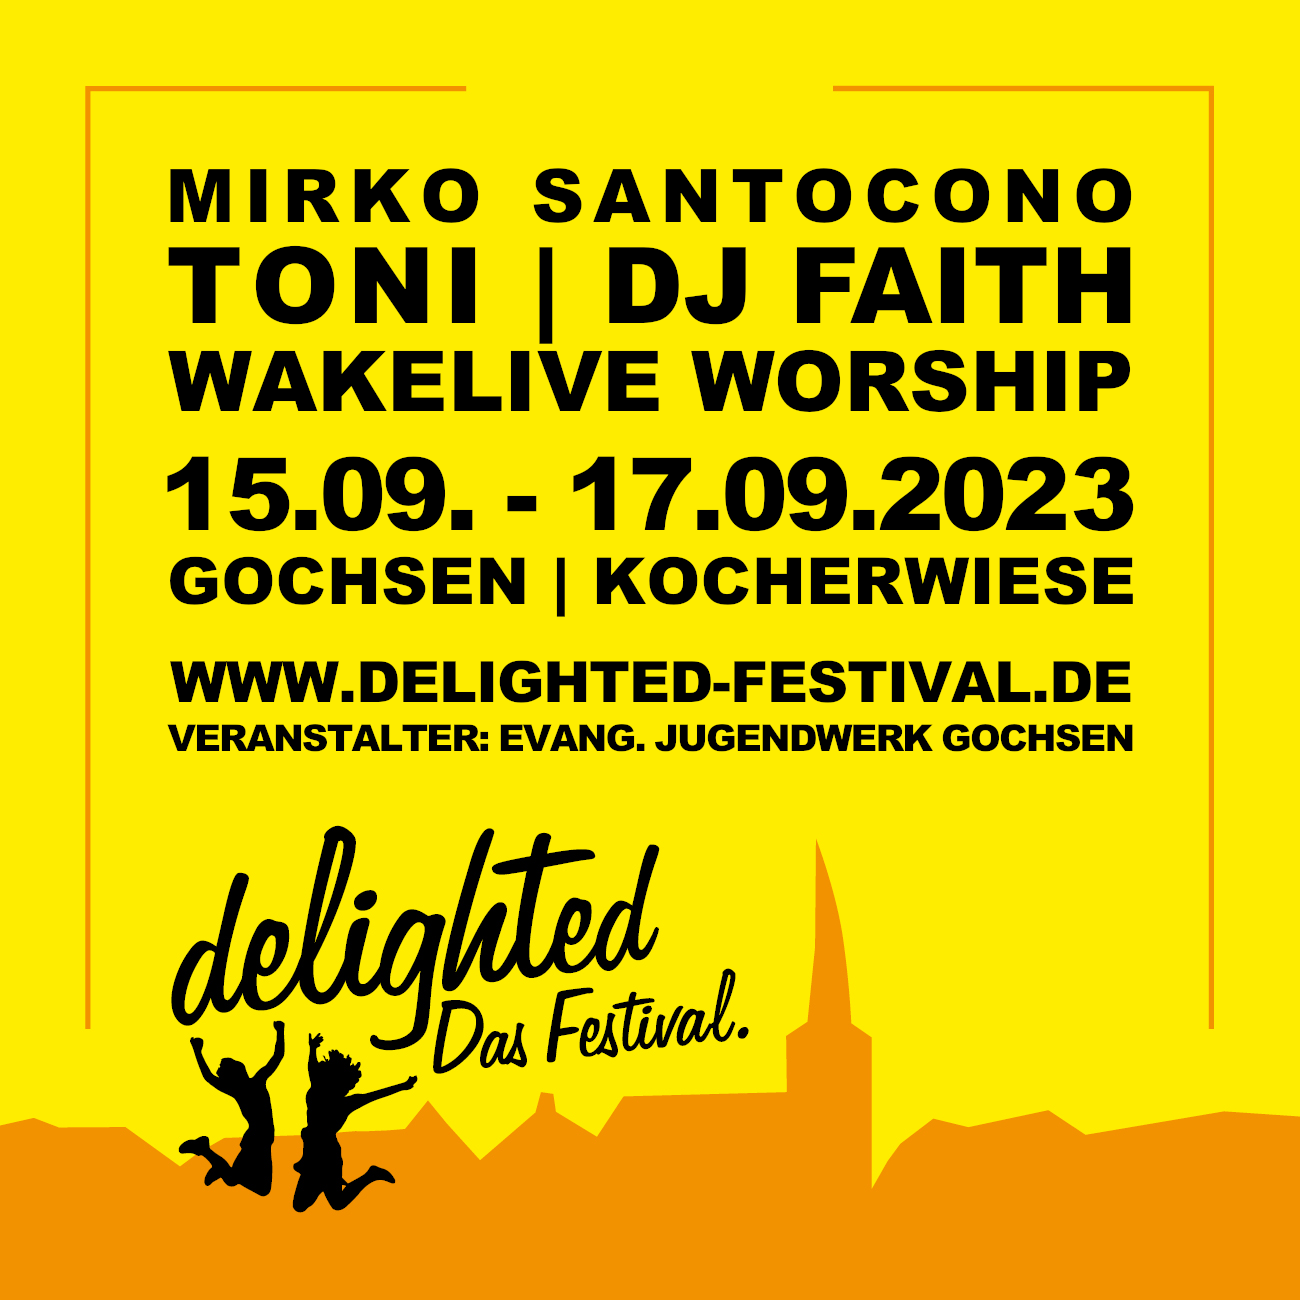 delighted - Das Festival.